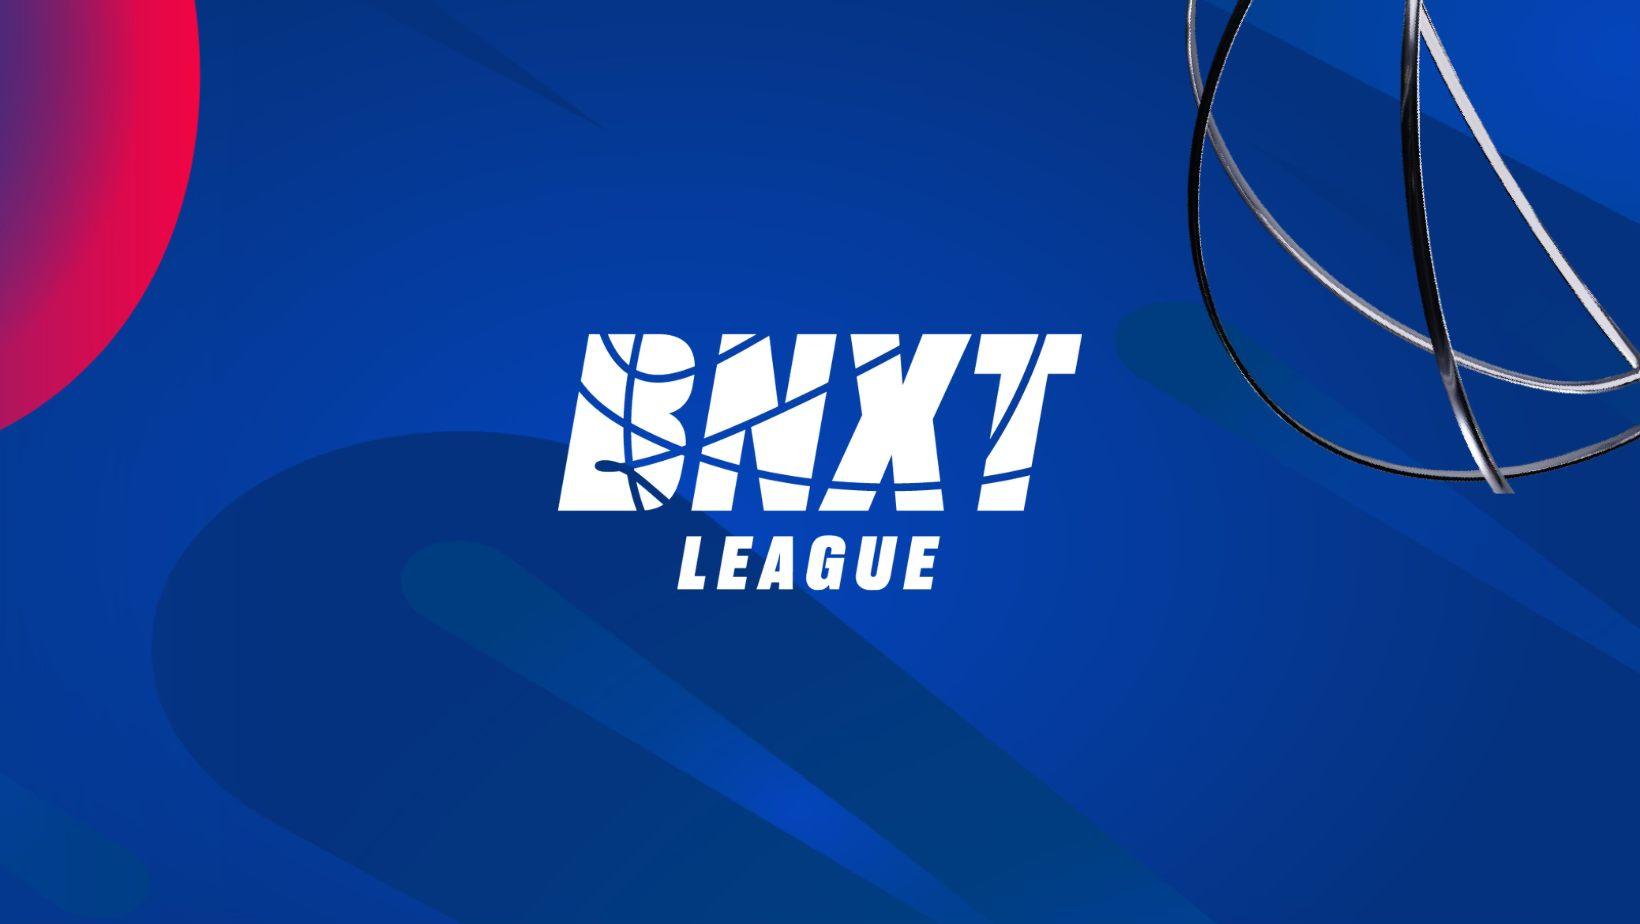 La BNXT League annonce un partenaire naming pour les playoffs